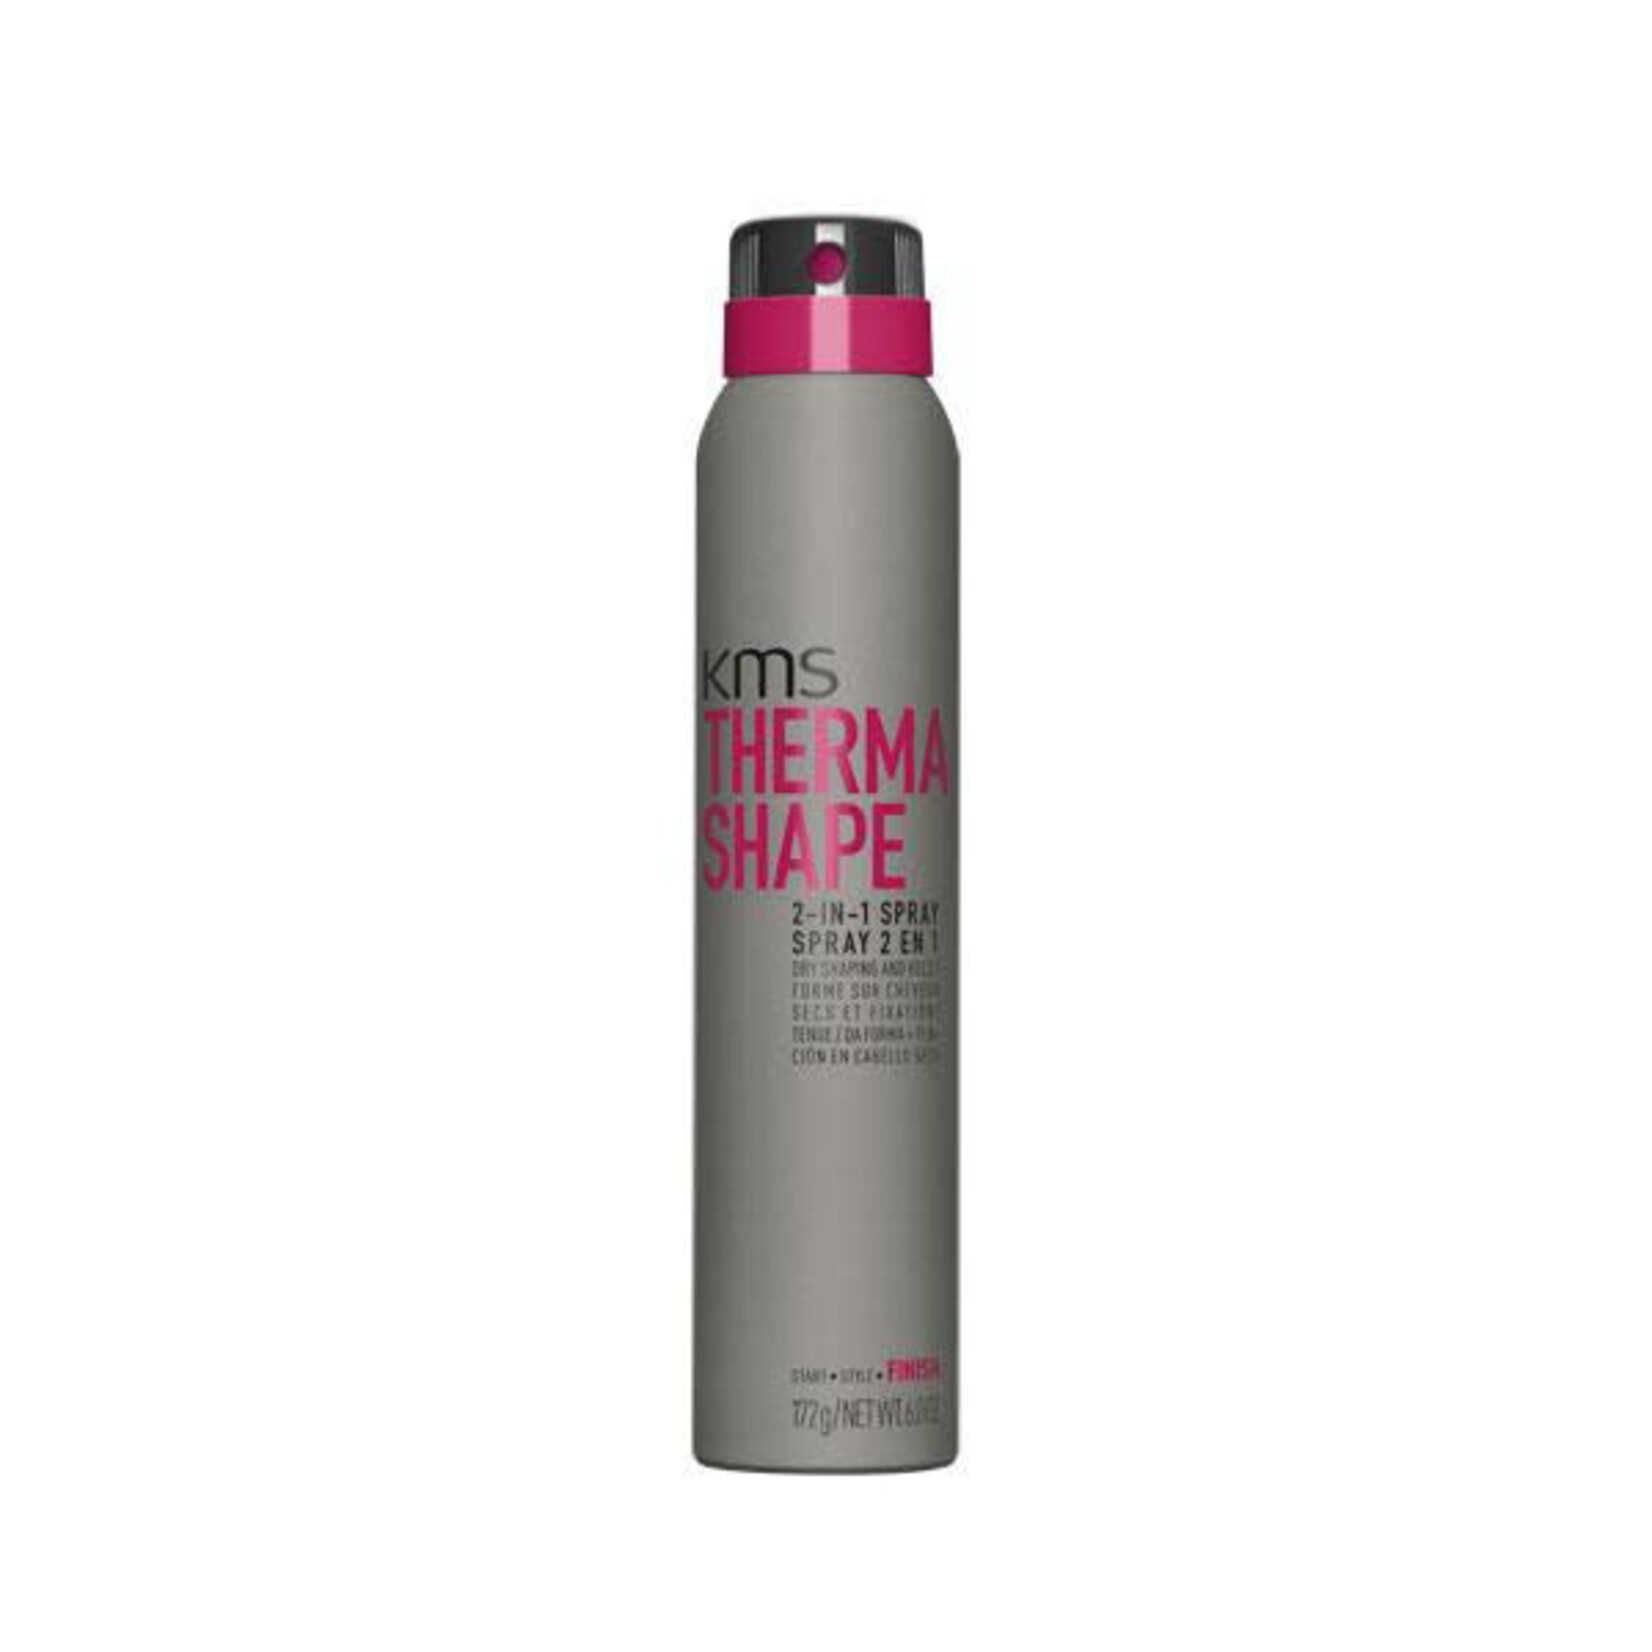 KMS KMS - Thermashape - 2-IN-1 Spray 200ml